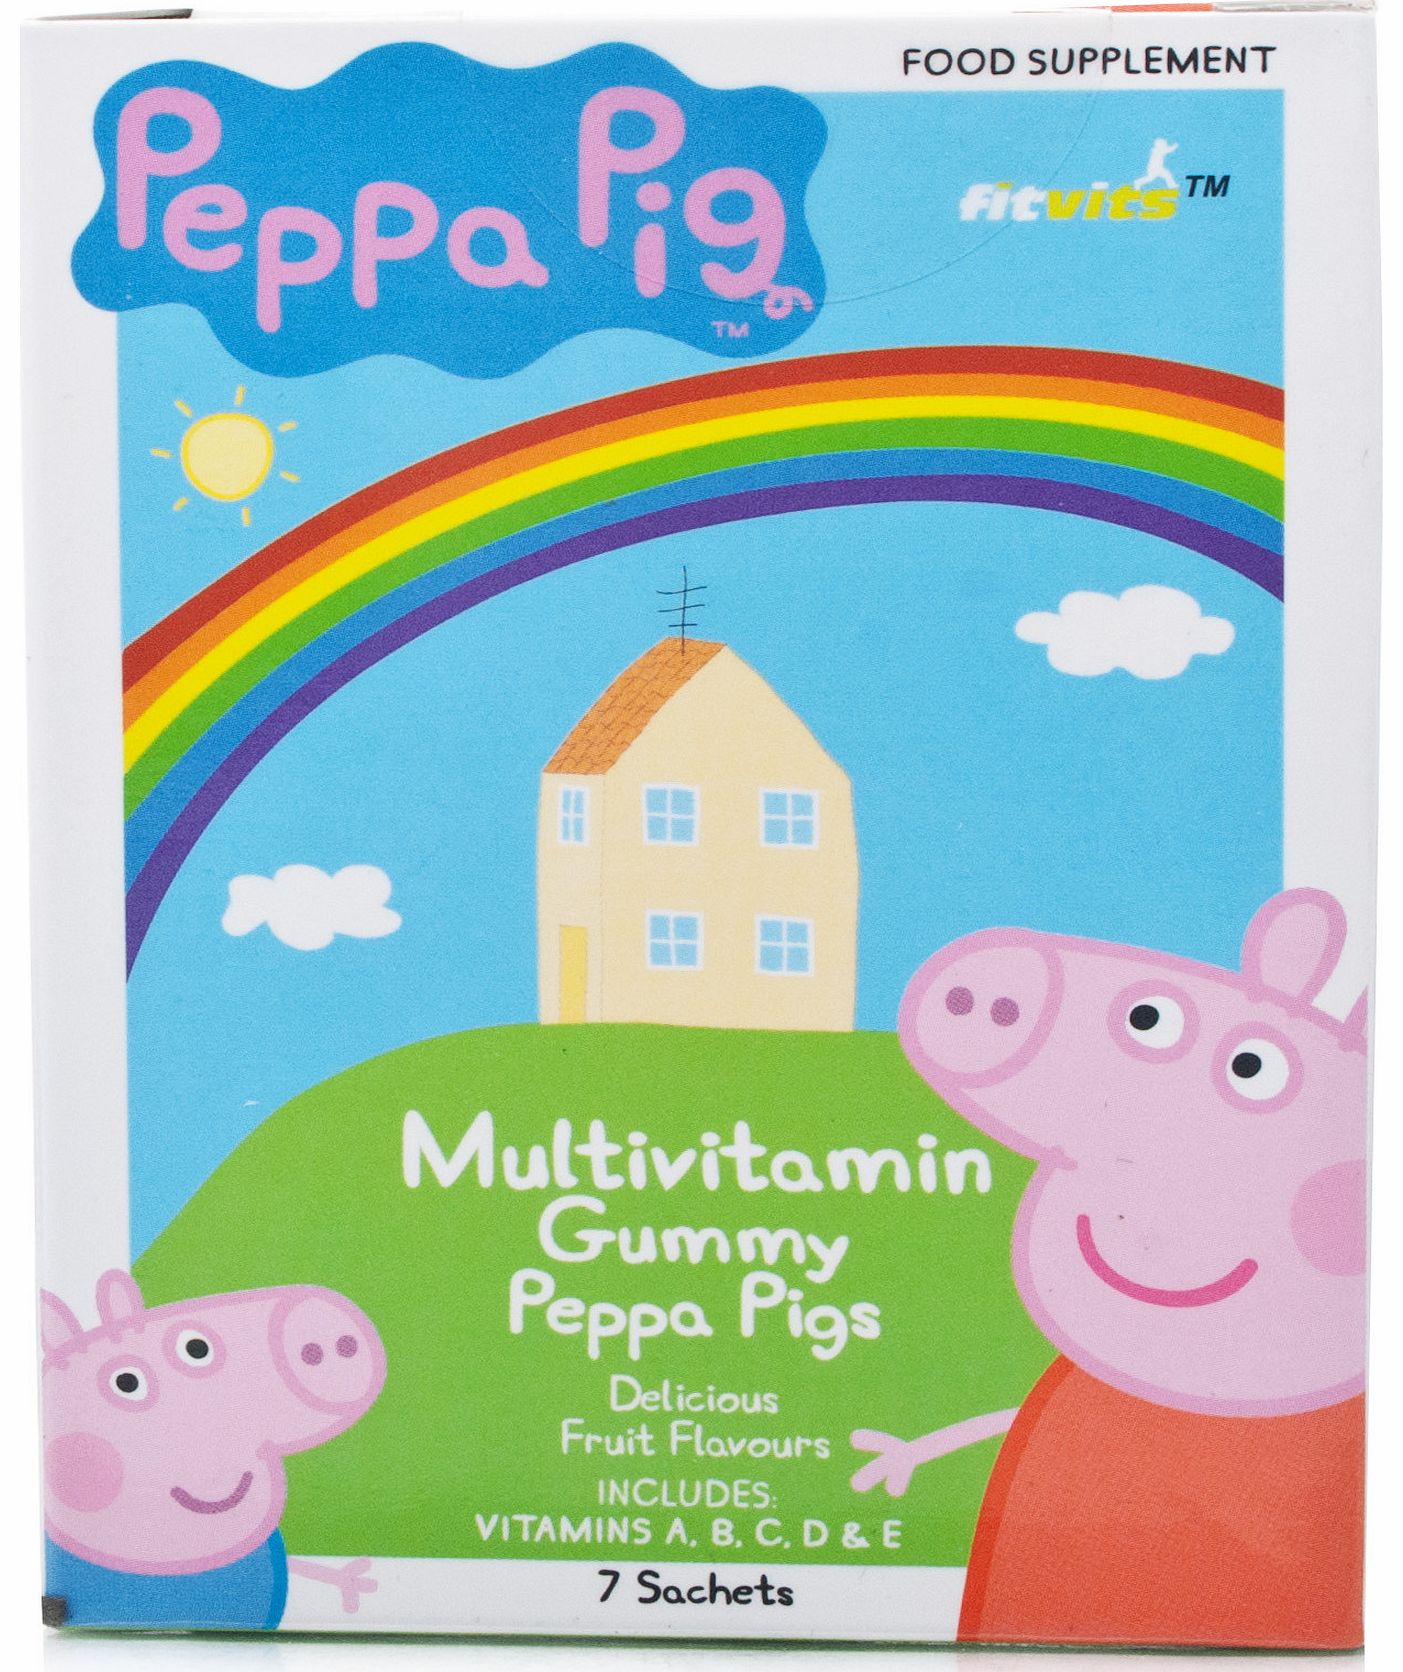 Fitvit Peppa Pig Multivitamins